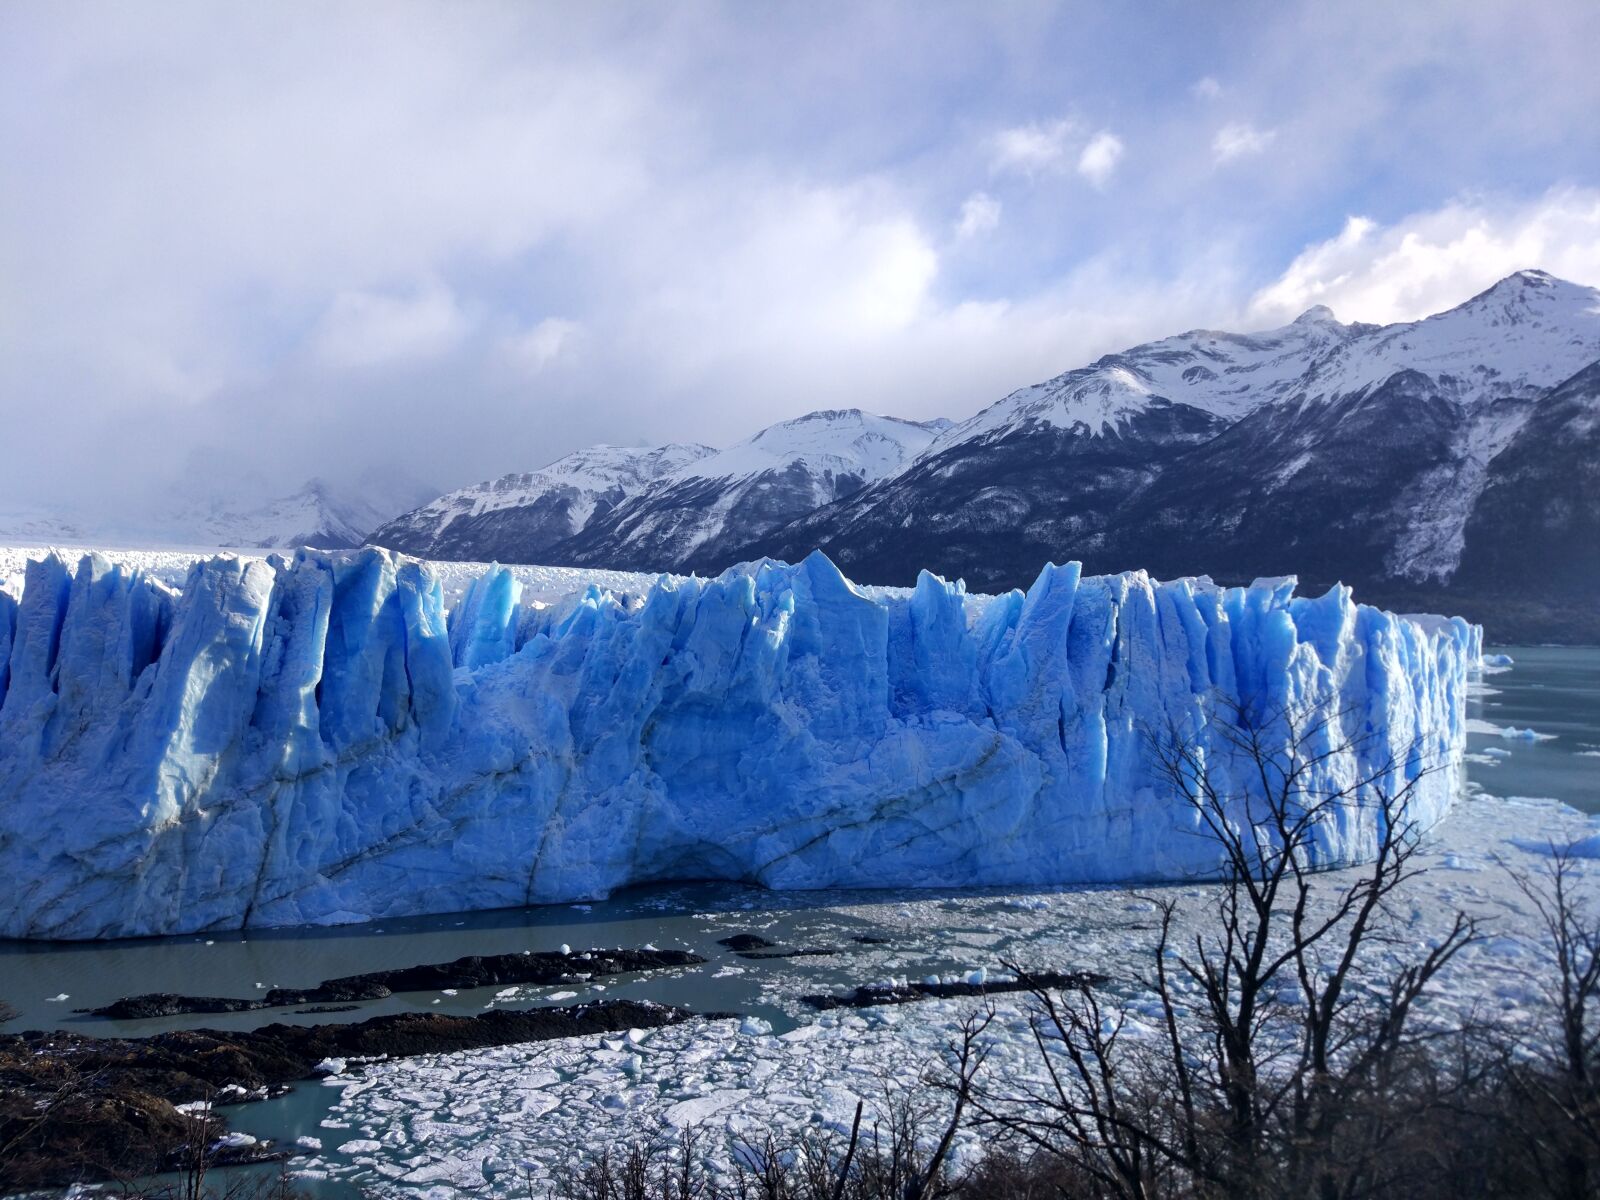 Xiaomi MI 5 sample photo. Glacier, artico, patagonia photography